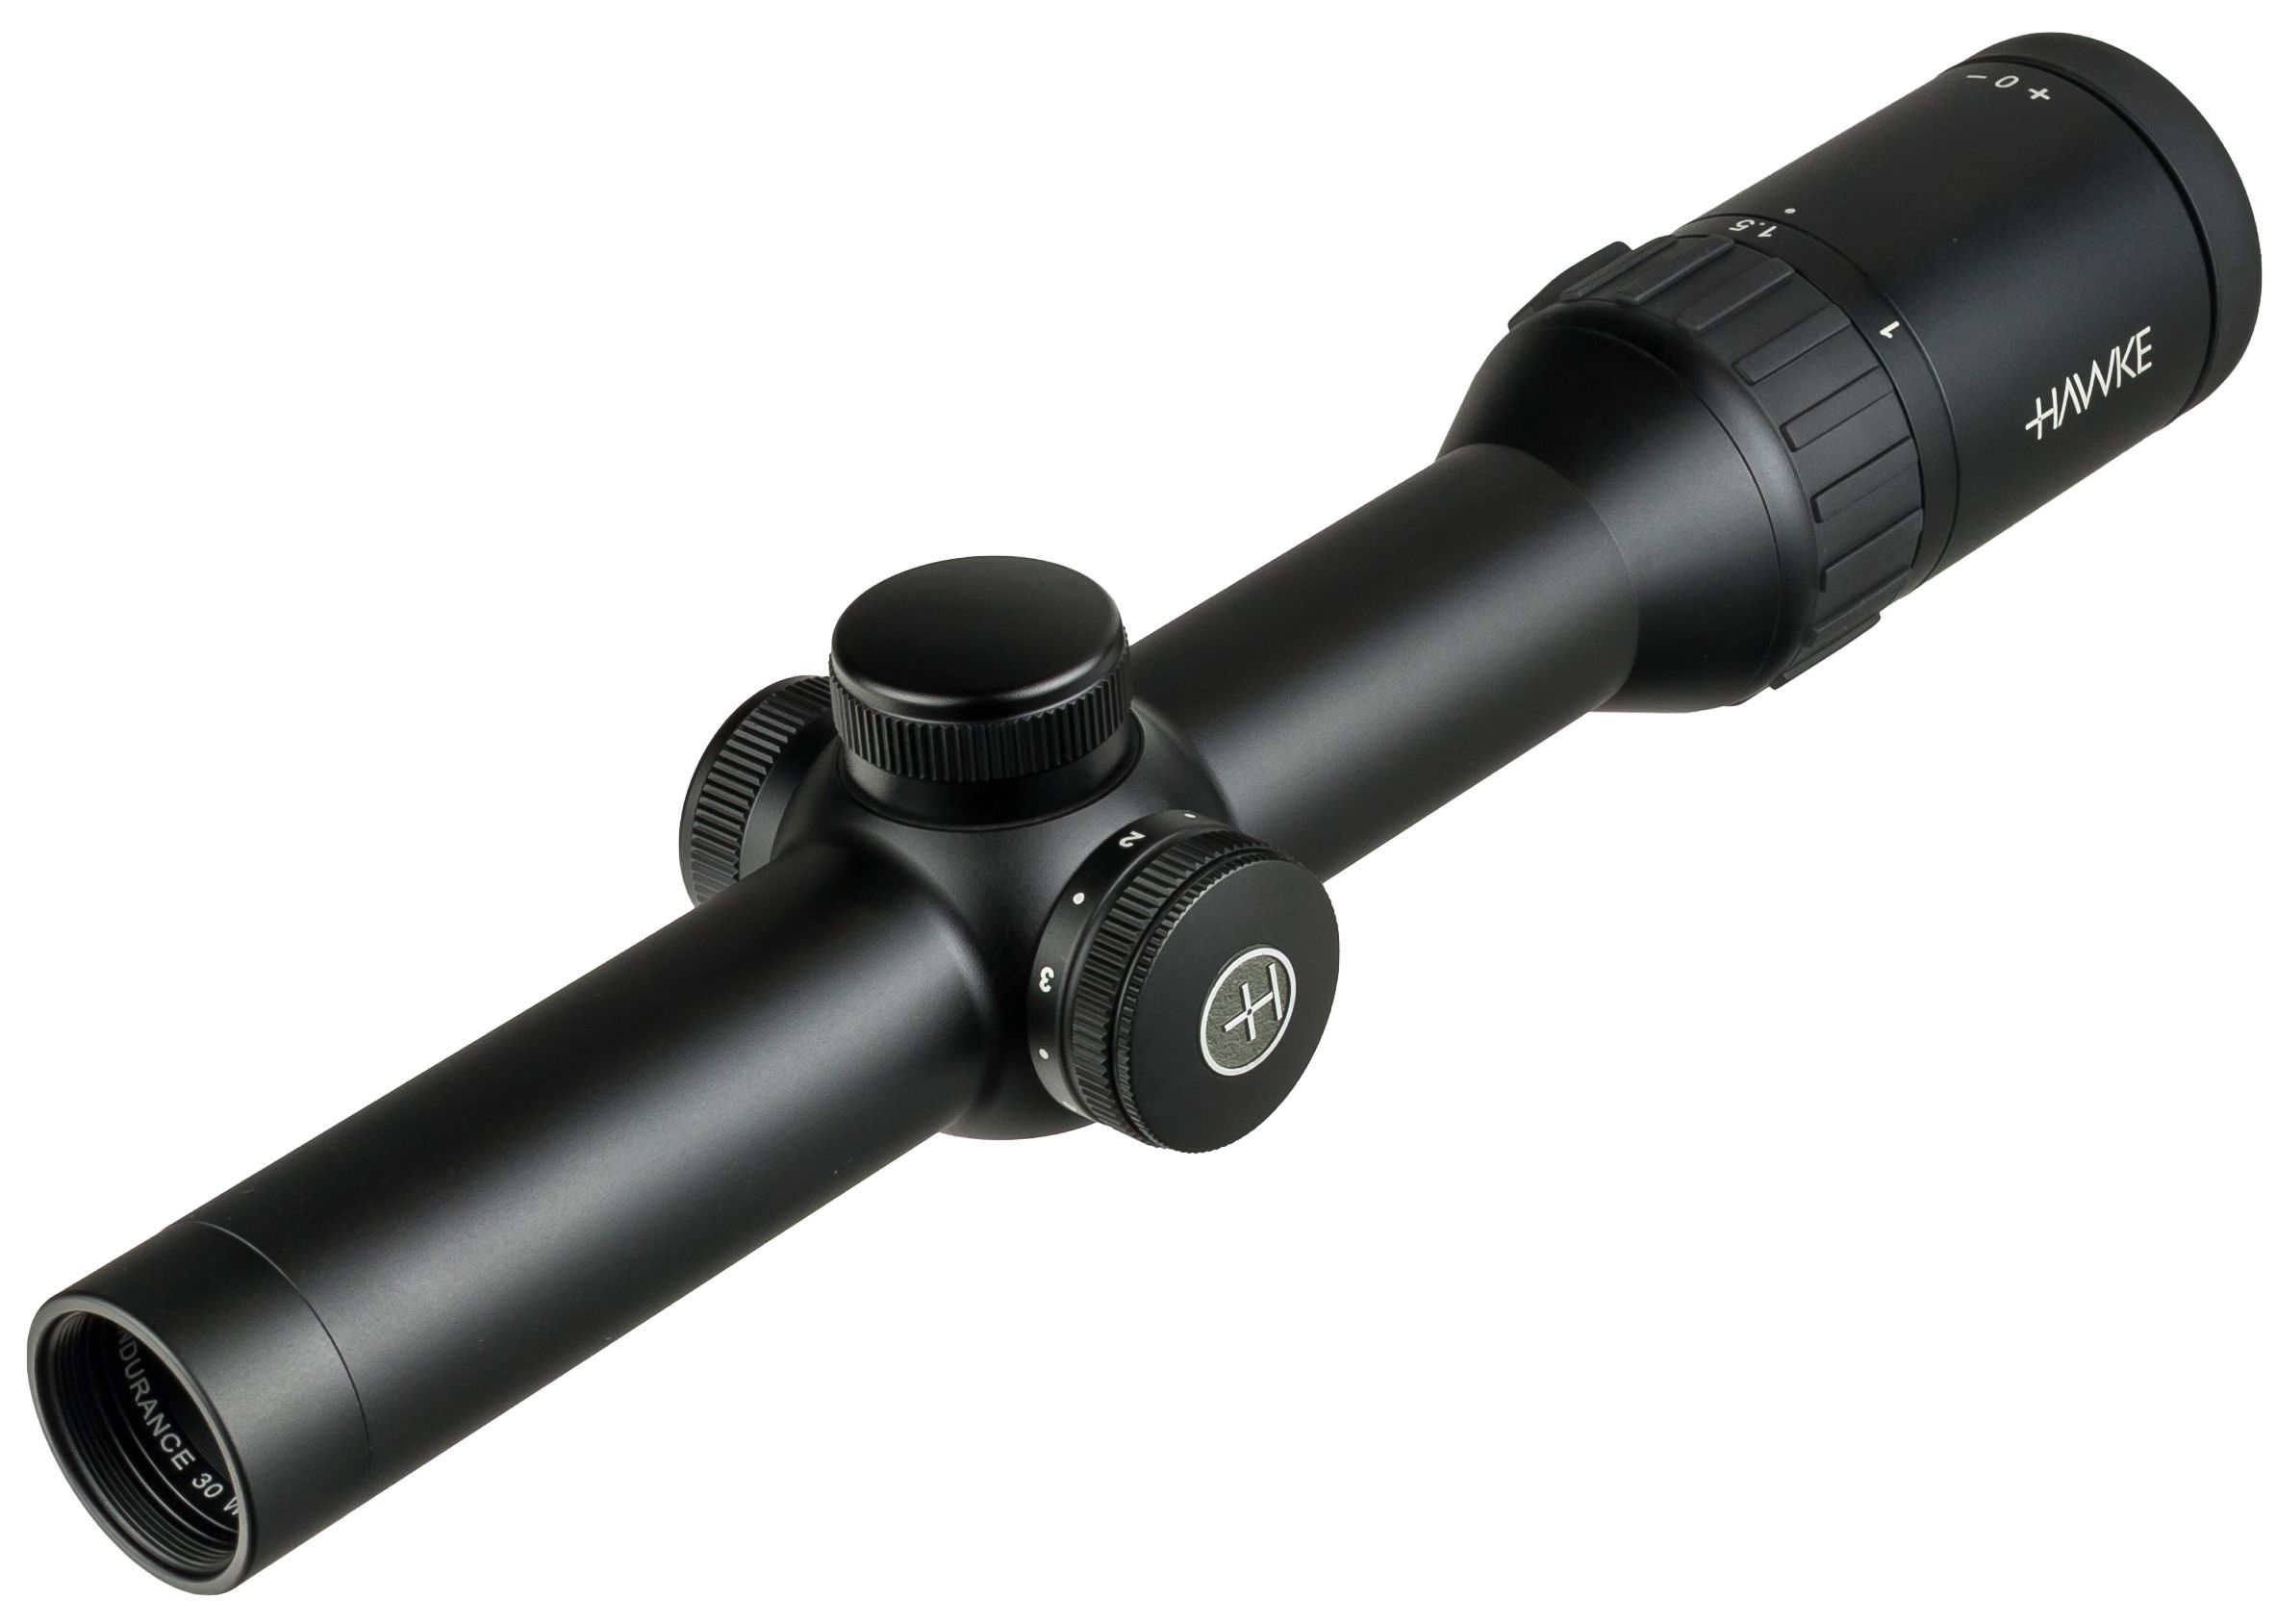 Hawke Optics Endurance 30 1-4x24 IR L4a Riflecope, Black, 16300 | eBay